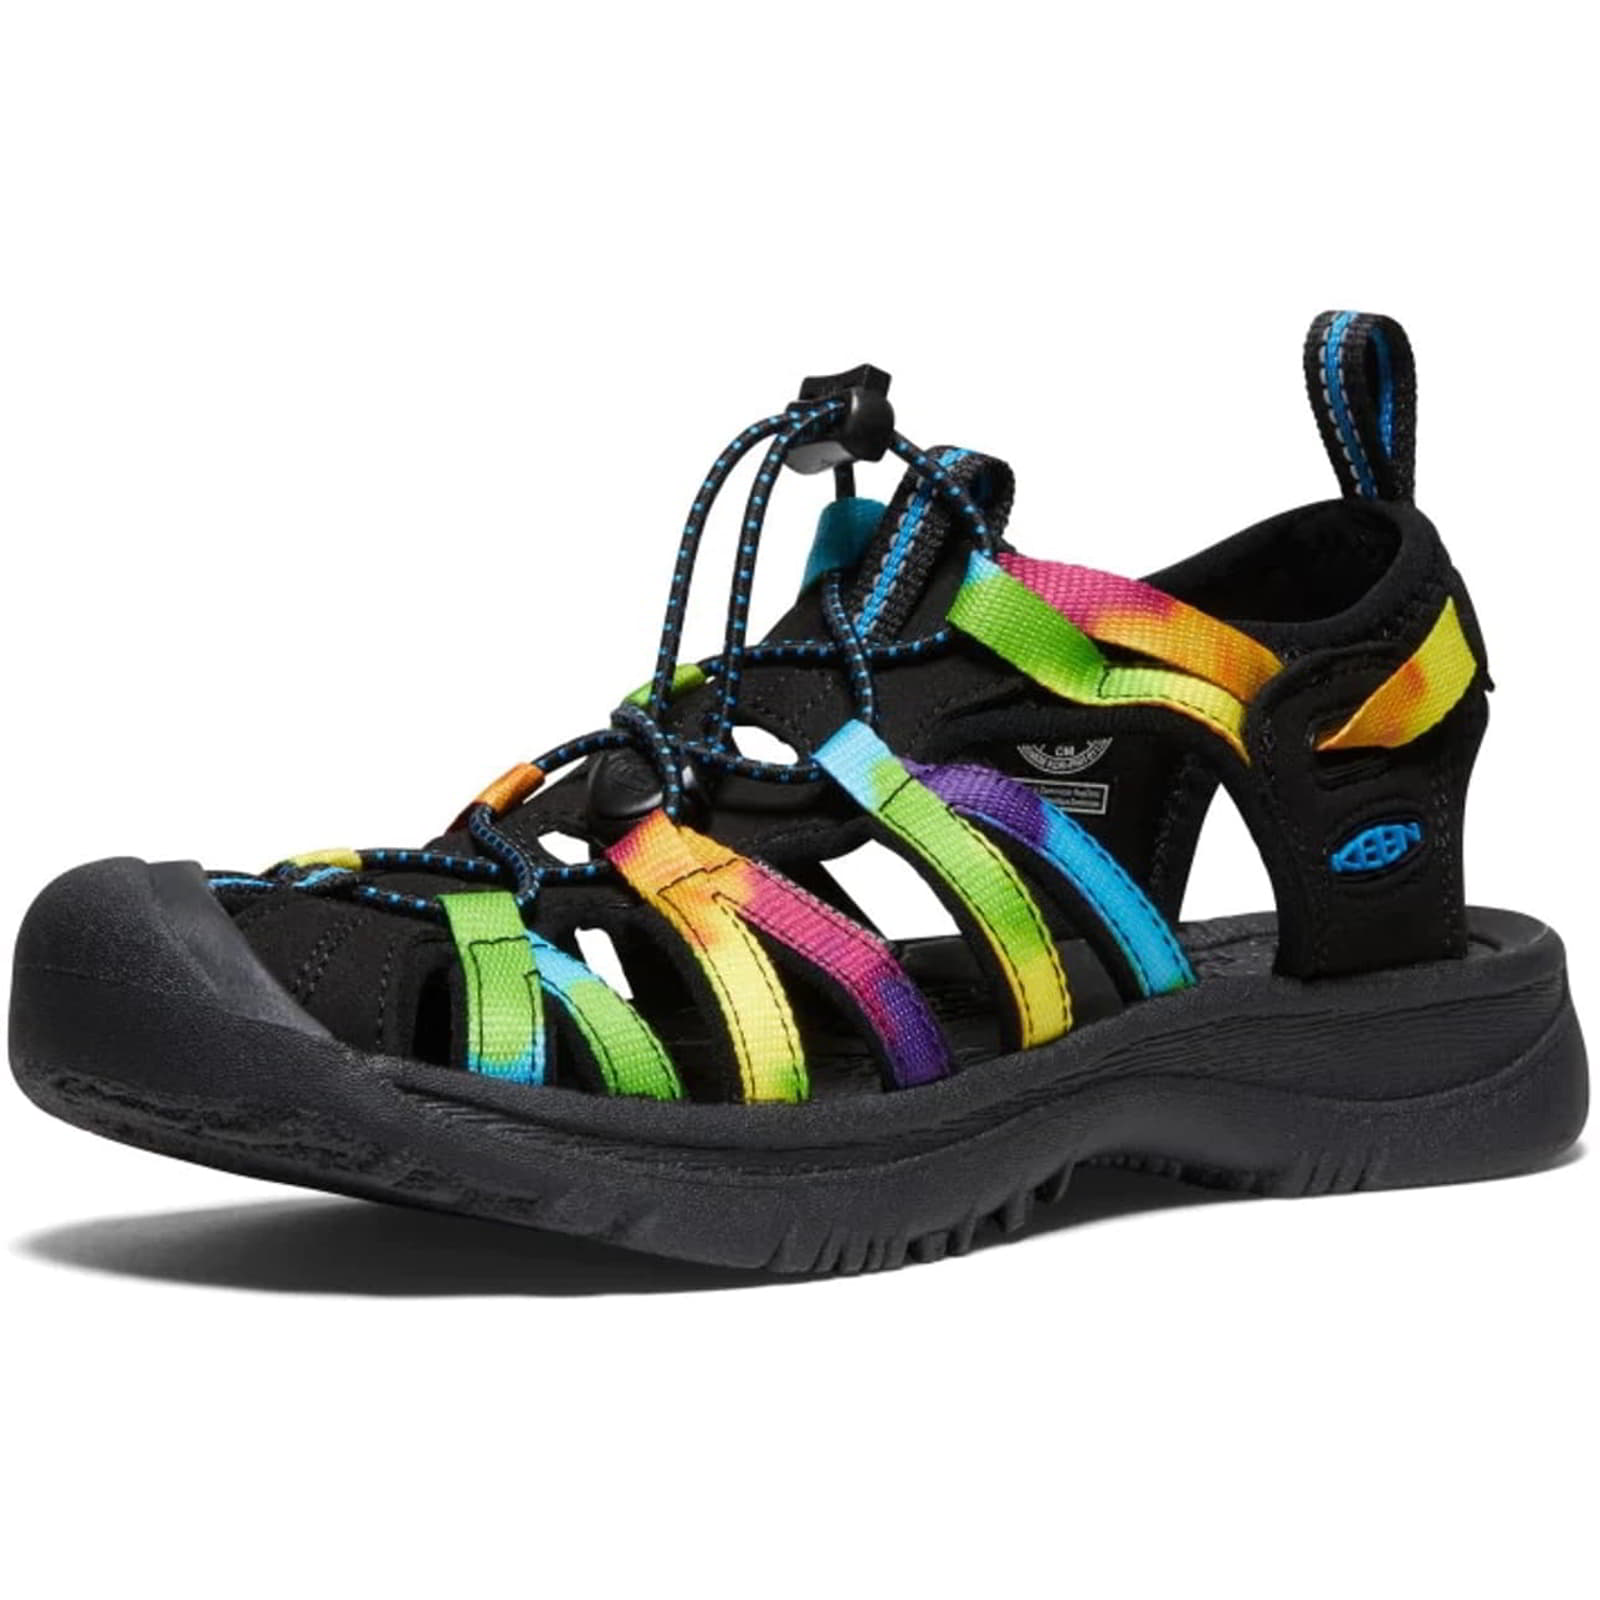 Keen Whisper Women's Waterproof Walking Hiking Sandals - UK 5.5 / 38.5 / US 8